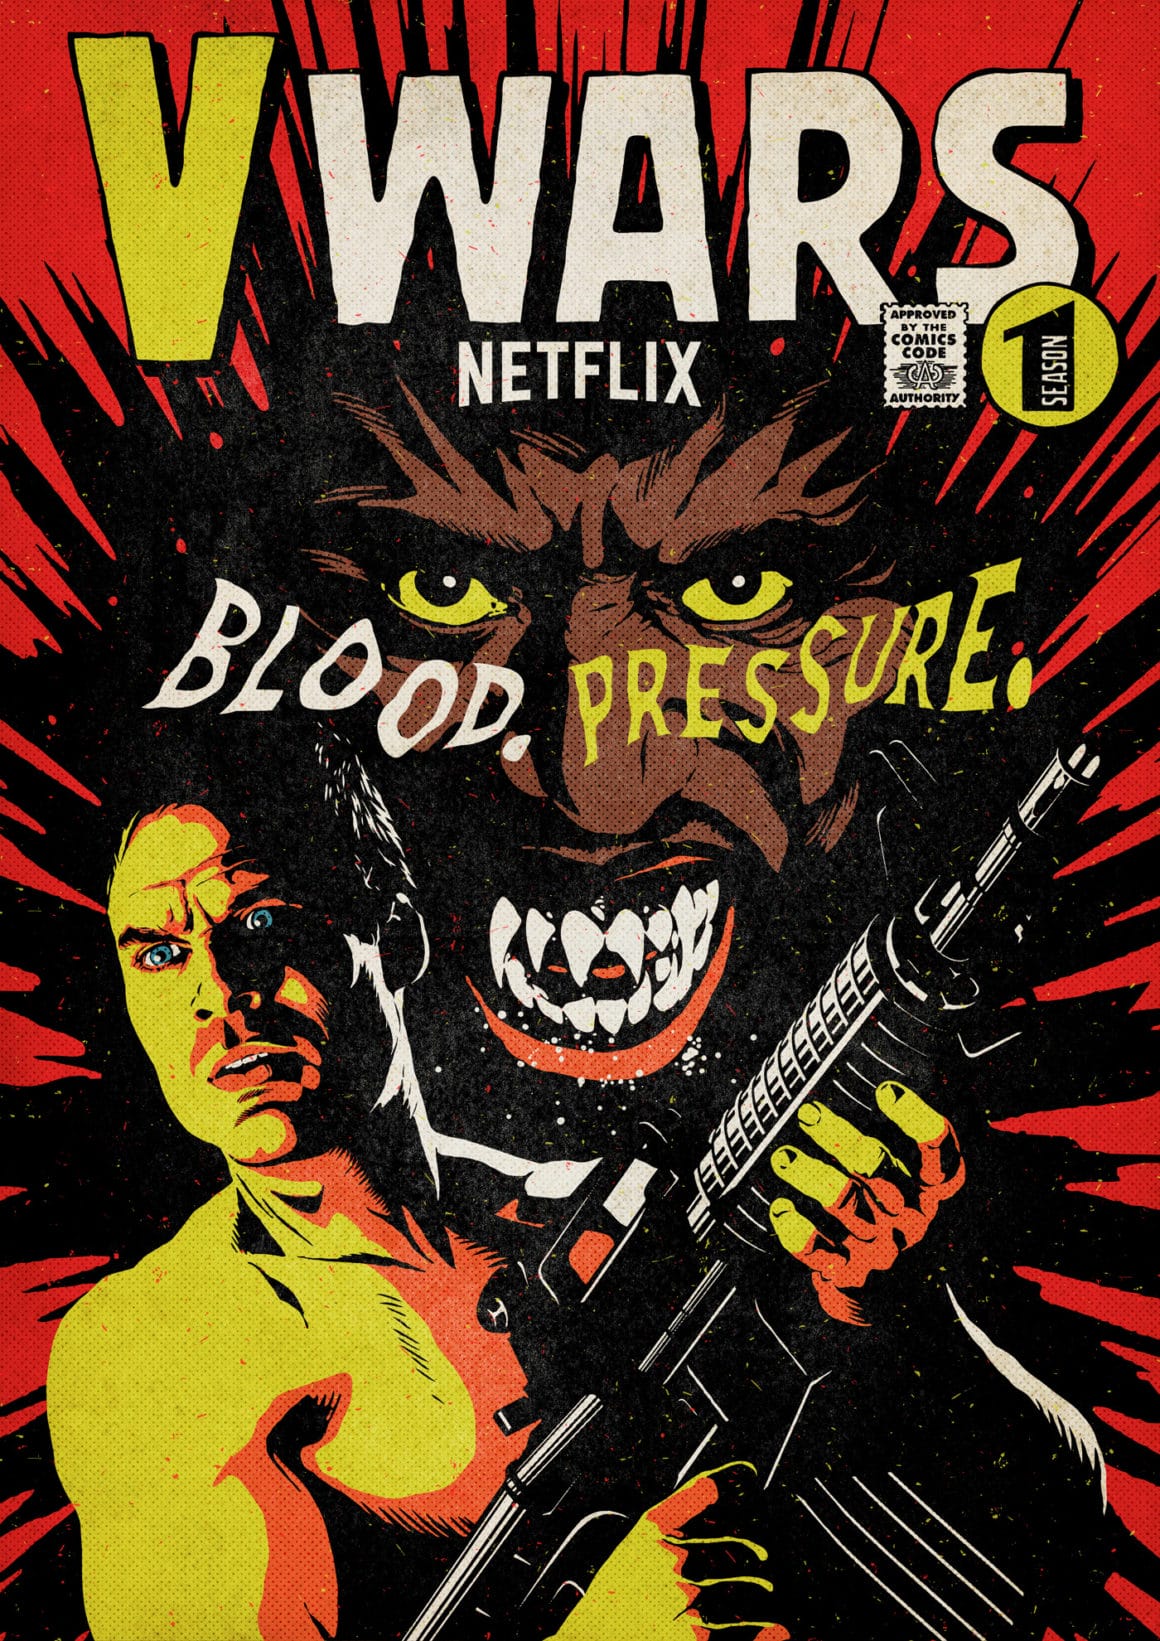 Fond rouge  avec un visage menaçant, un monstre qui montre les dents et devant un homme armé. Le titre "V Wars" est écrit en blanc et jaune en haut de l'illustration